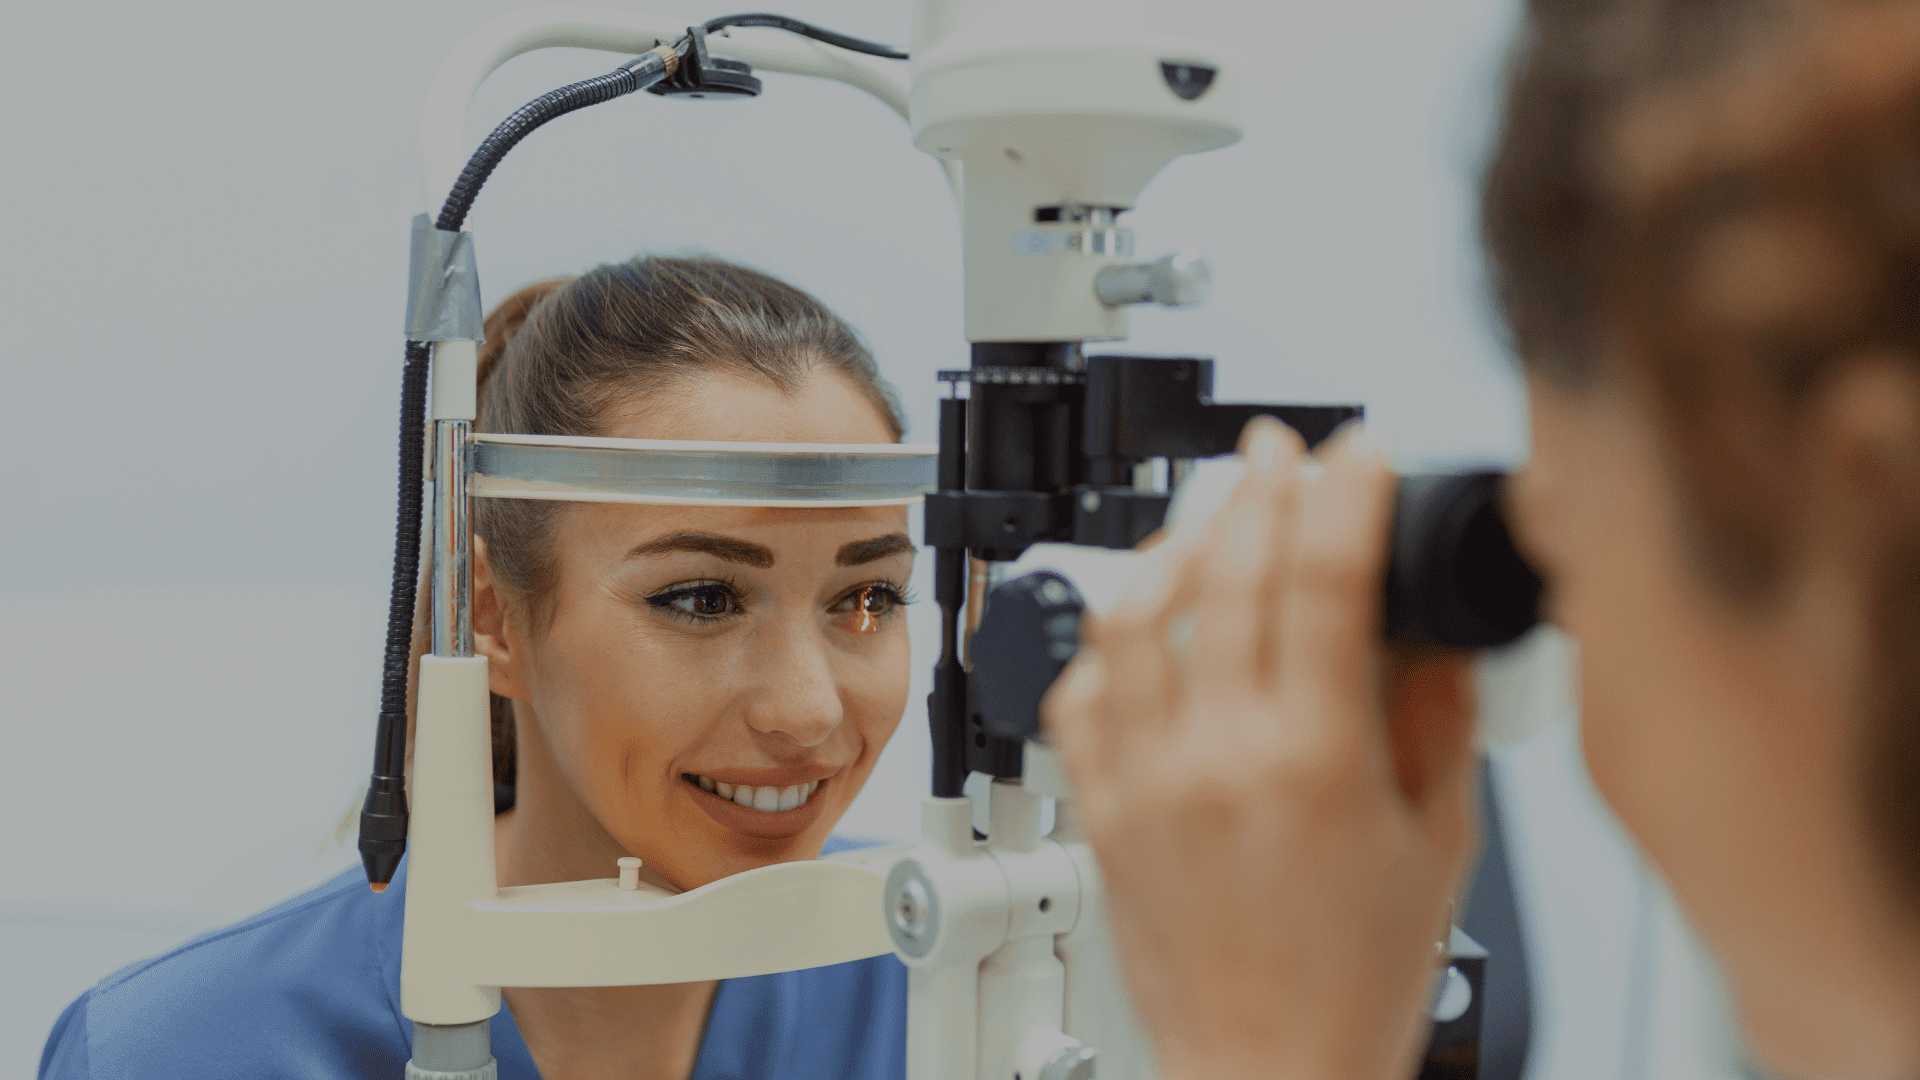 Una paciente recibe atención en una consulta oftalmológica, representando el nuevo convenio con Comfacauca que ofrece tarifas especiales para servicios de salud visual